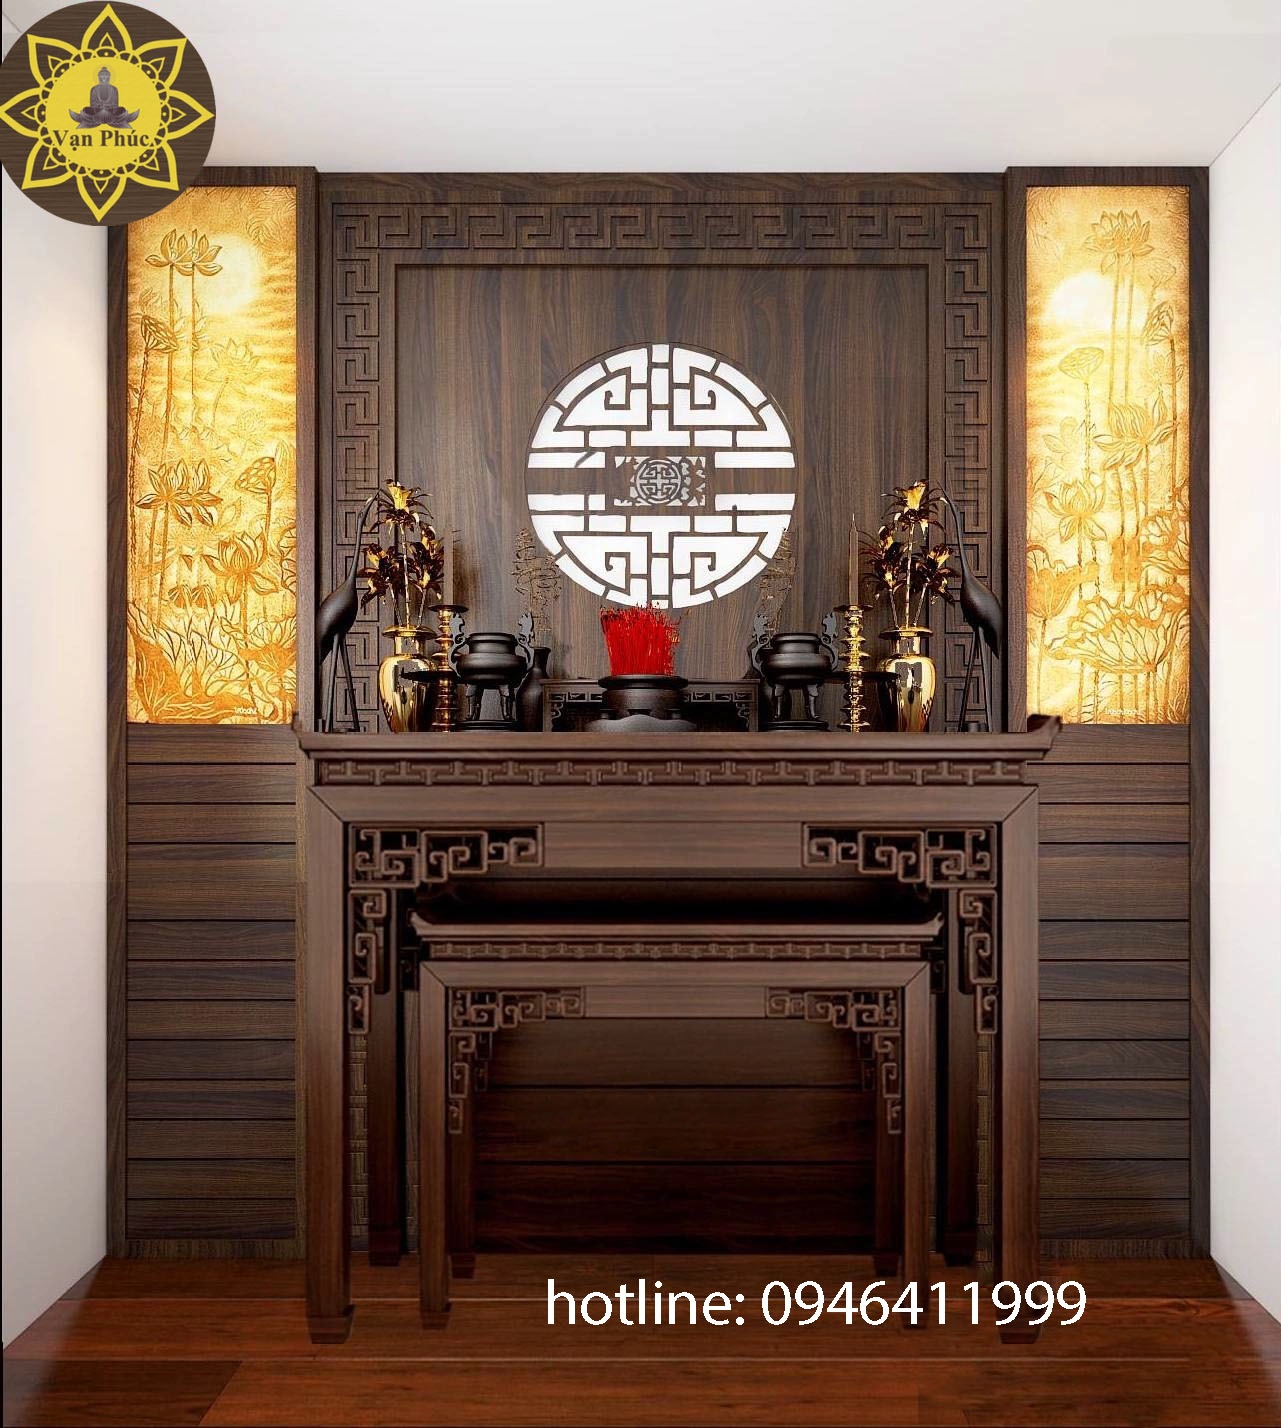 Bàn thờ Phật cao cấp được thiết kế với các chi tiết tinh tế và chất liệu cao cấp sẽ mang lại một không gian tĩnh lặng và thiêng liêng cho gia đình bạn. Hãy xem hình ảnh để cảm nhận rõ hơn về vẻ đẹp của bàn thờ này.